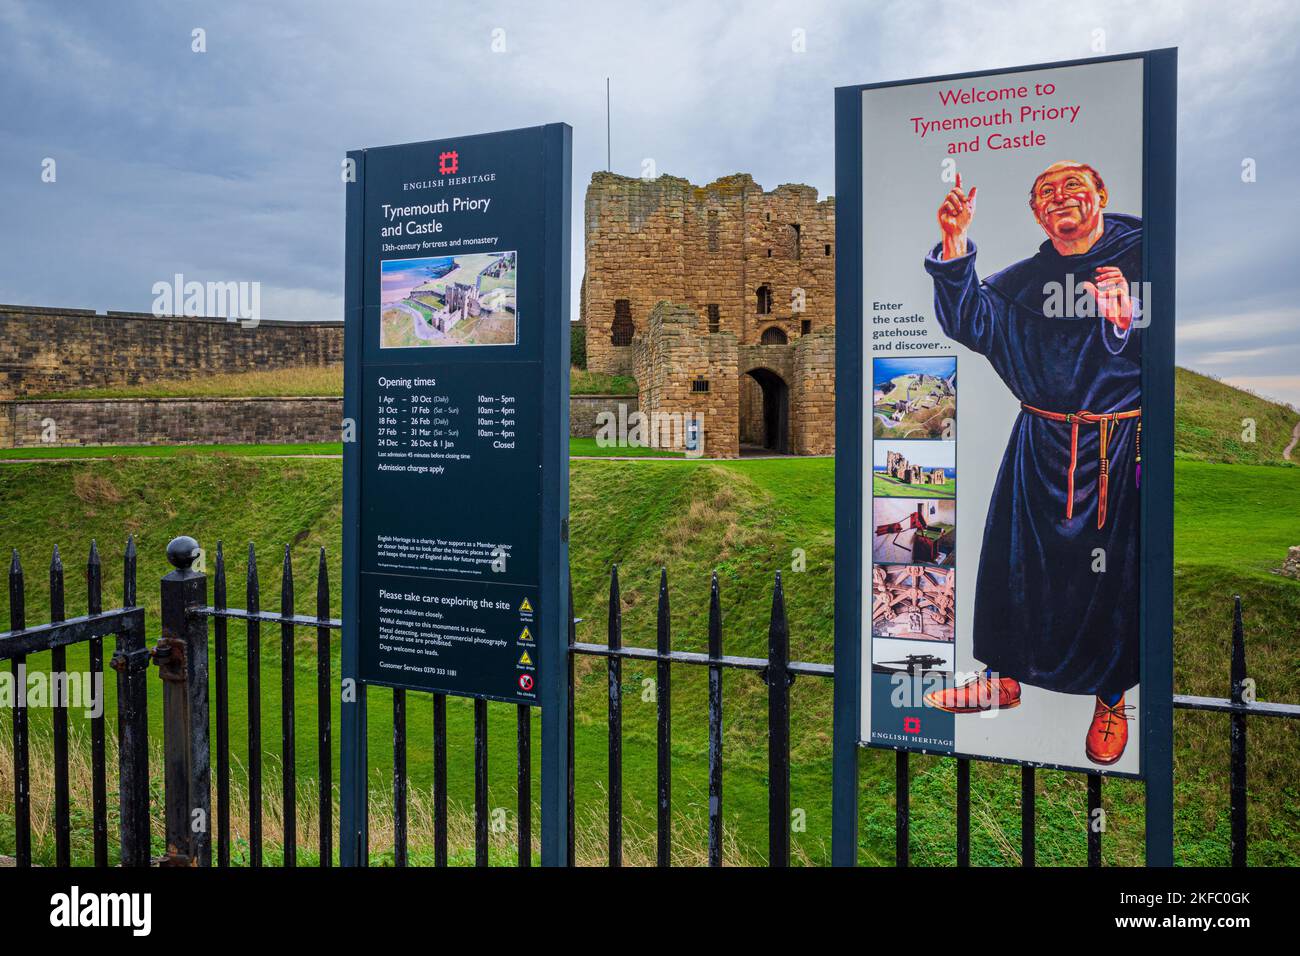 Prieuré et château de Tynemouth, Tynemouth, Royaume-Uni. Entrée au Prieuré et au château de Tynemouth, patrimoine anglais. Prieuré médiéval avec château protecteur. Banque D'Images